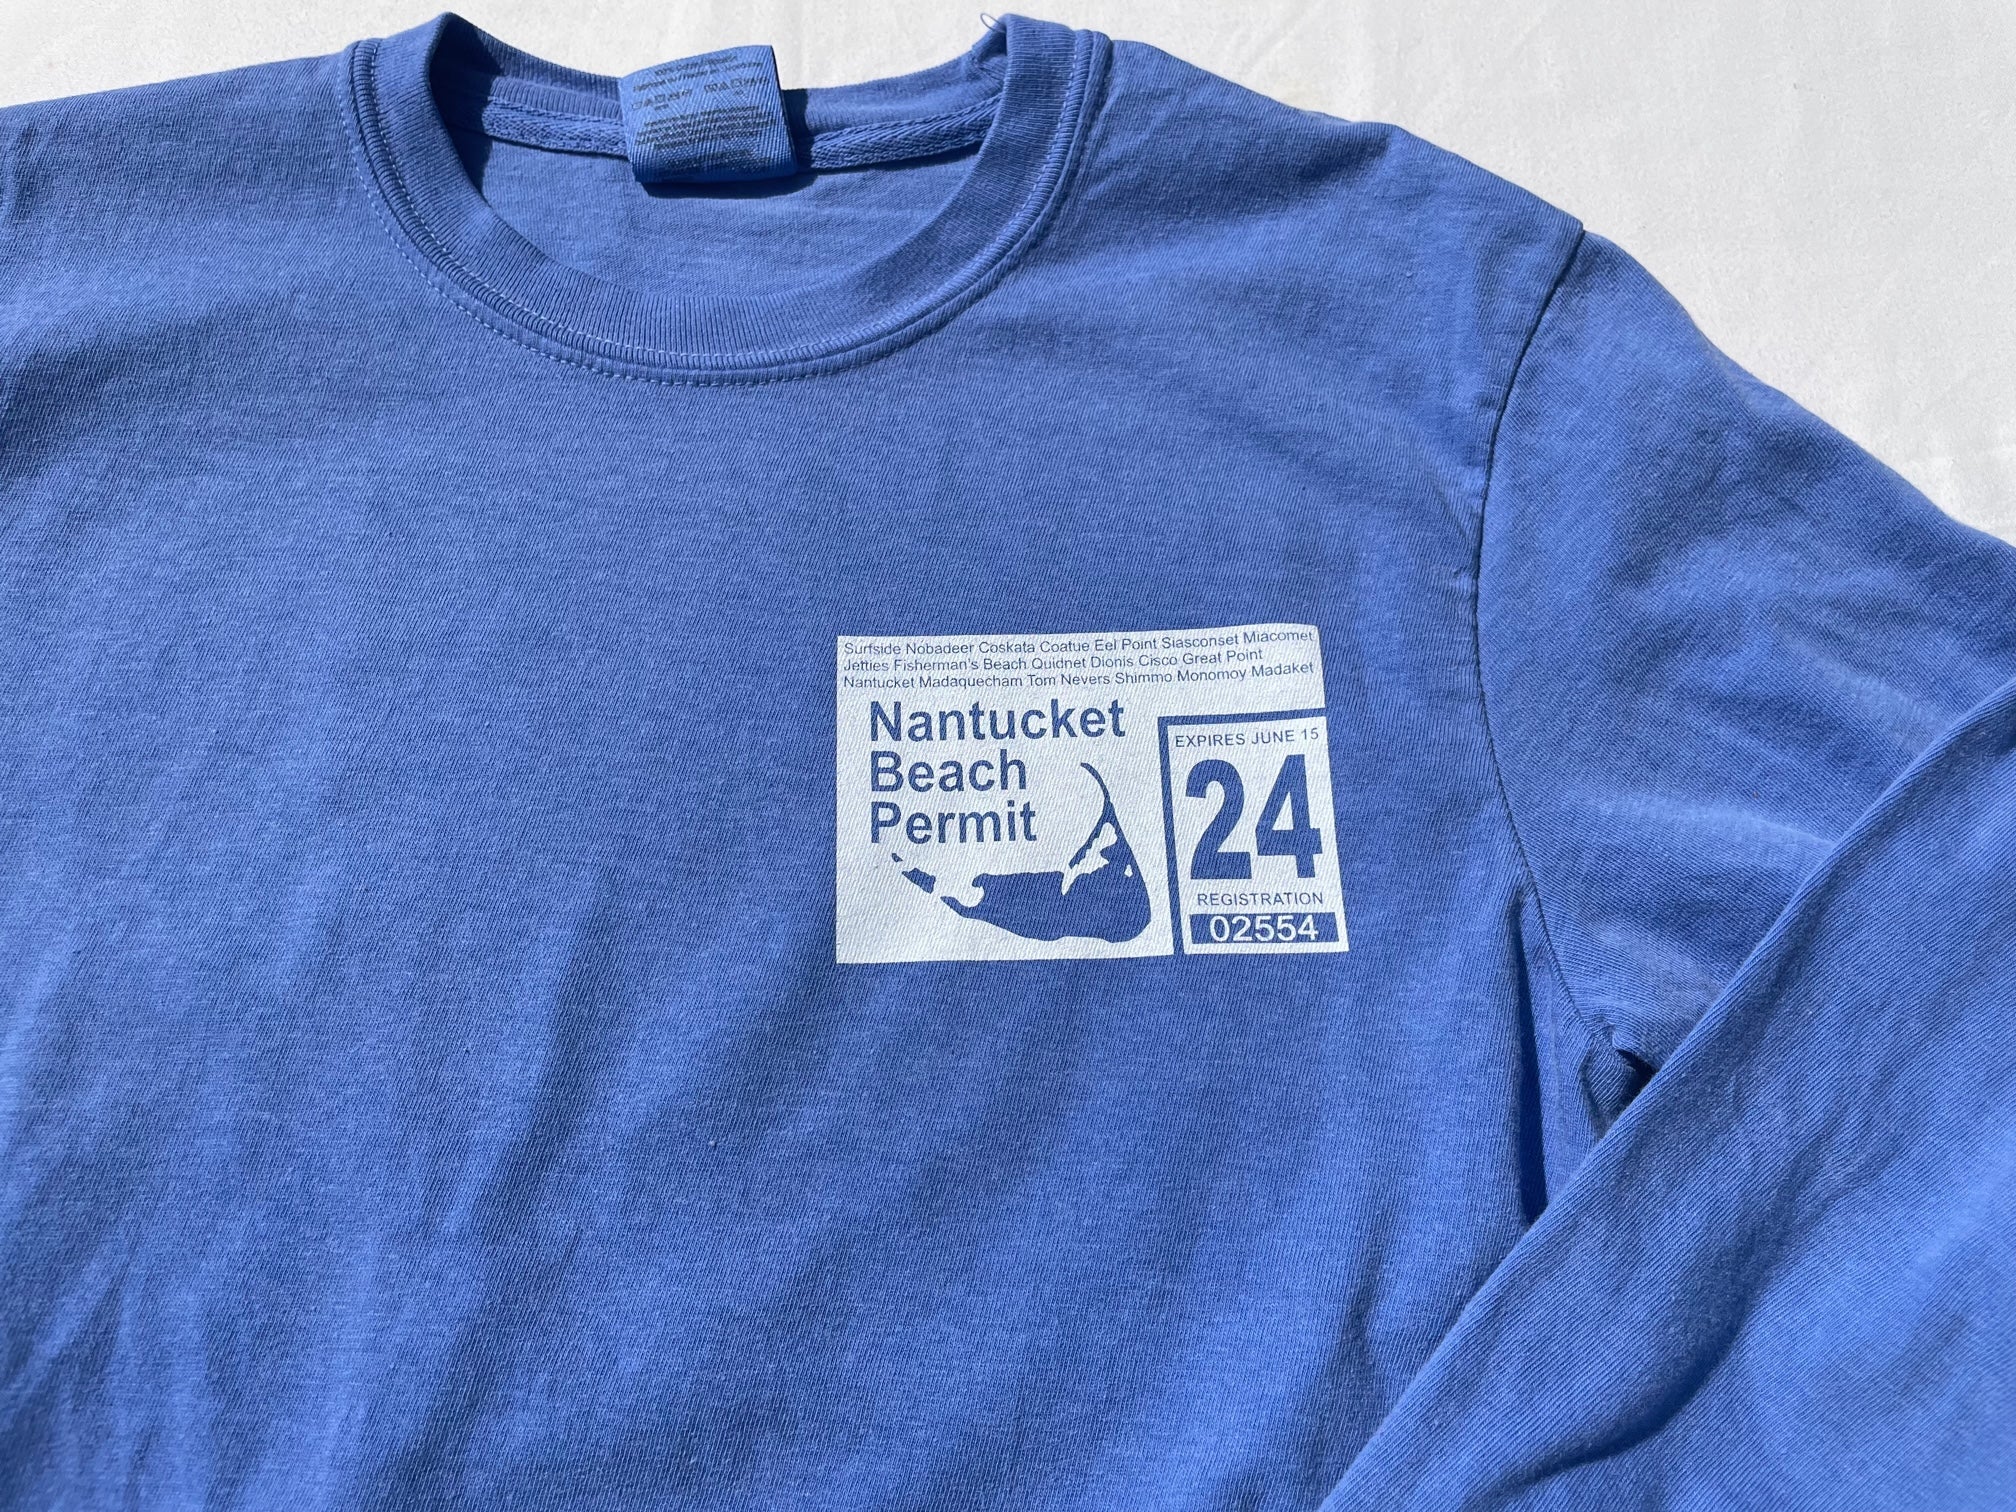 '24 Long Sleeve Nantucket Beach Permit Tee in Periwinkle Blue